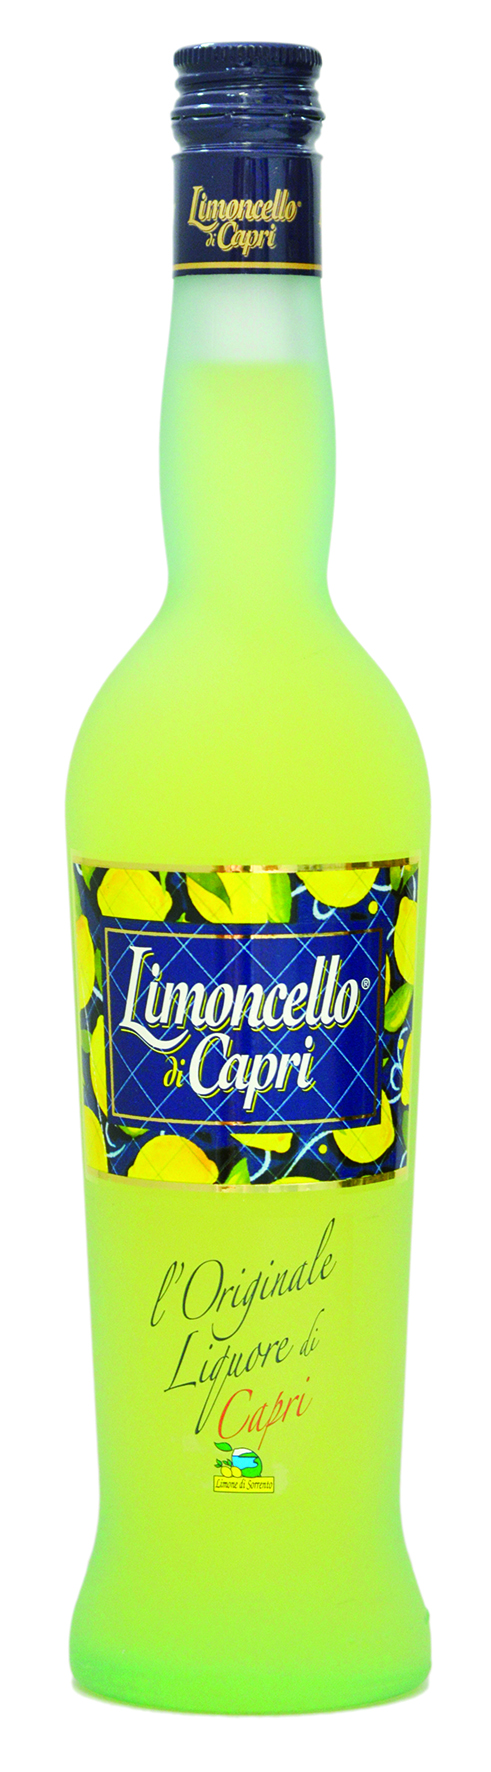 Limoncello di Capri 1,0 L 30% Alc. Vol.